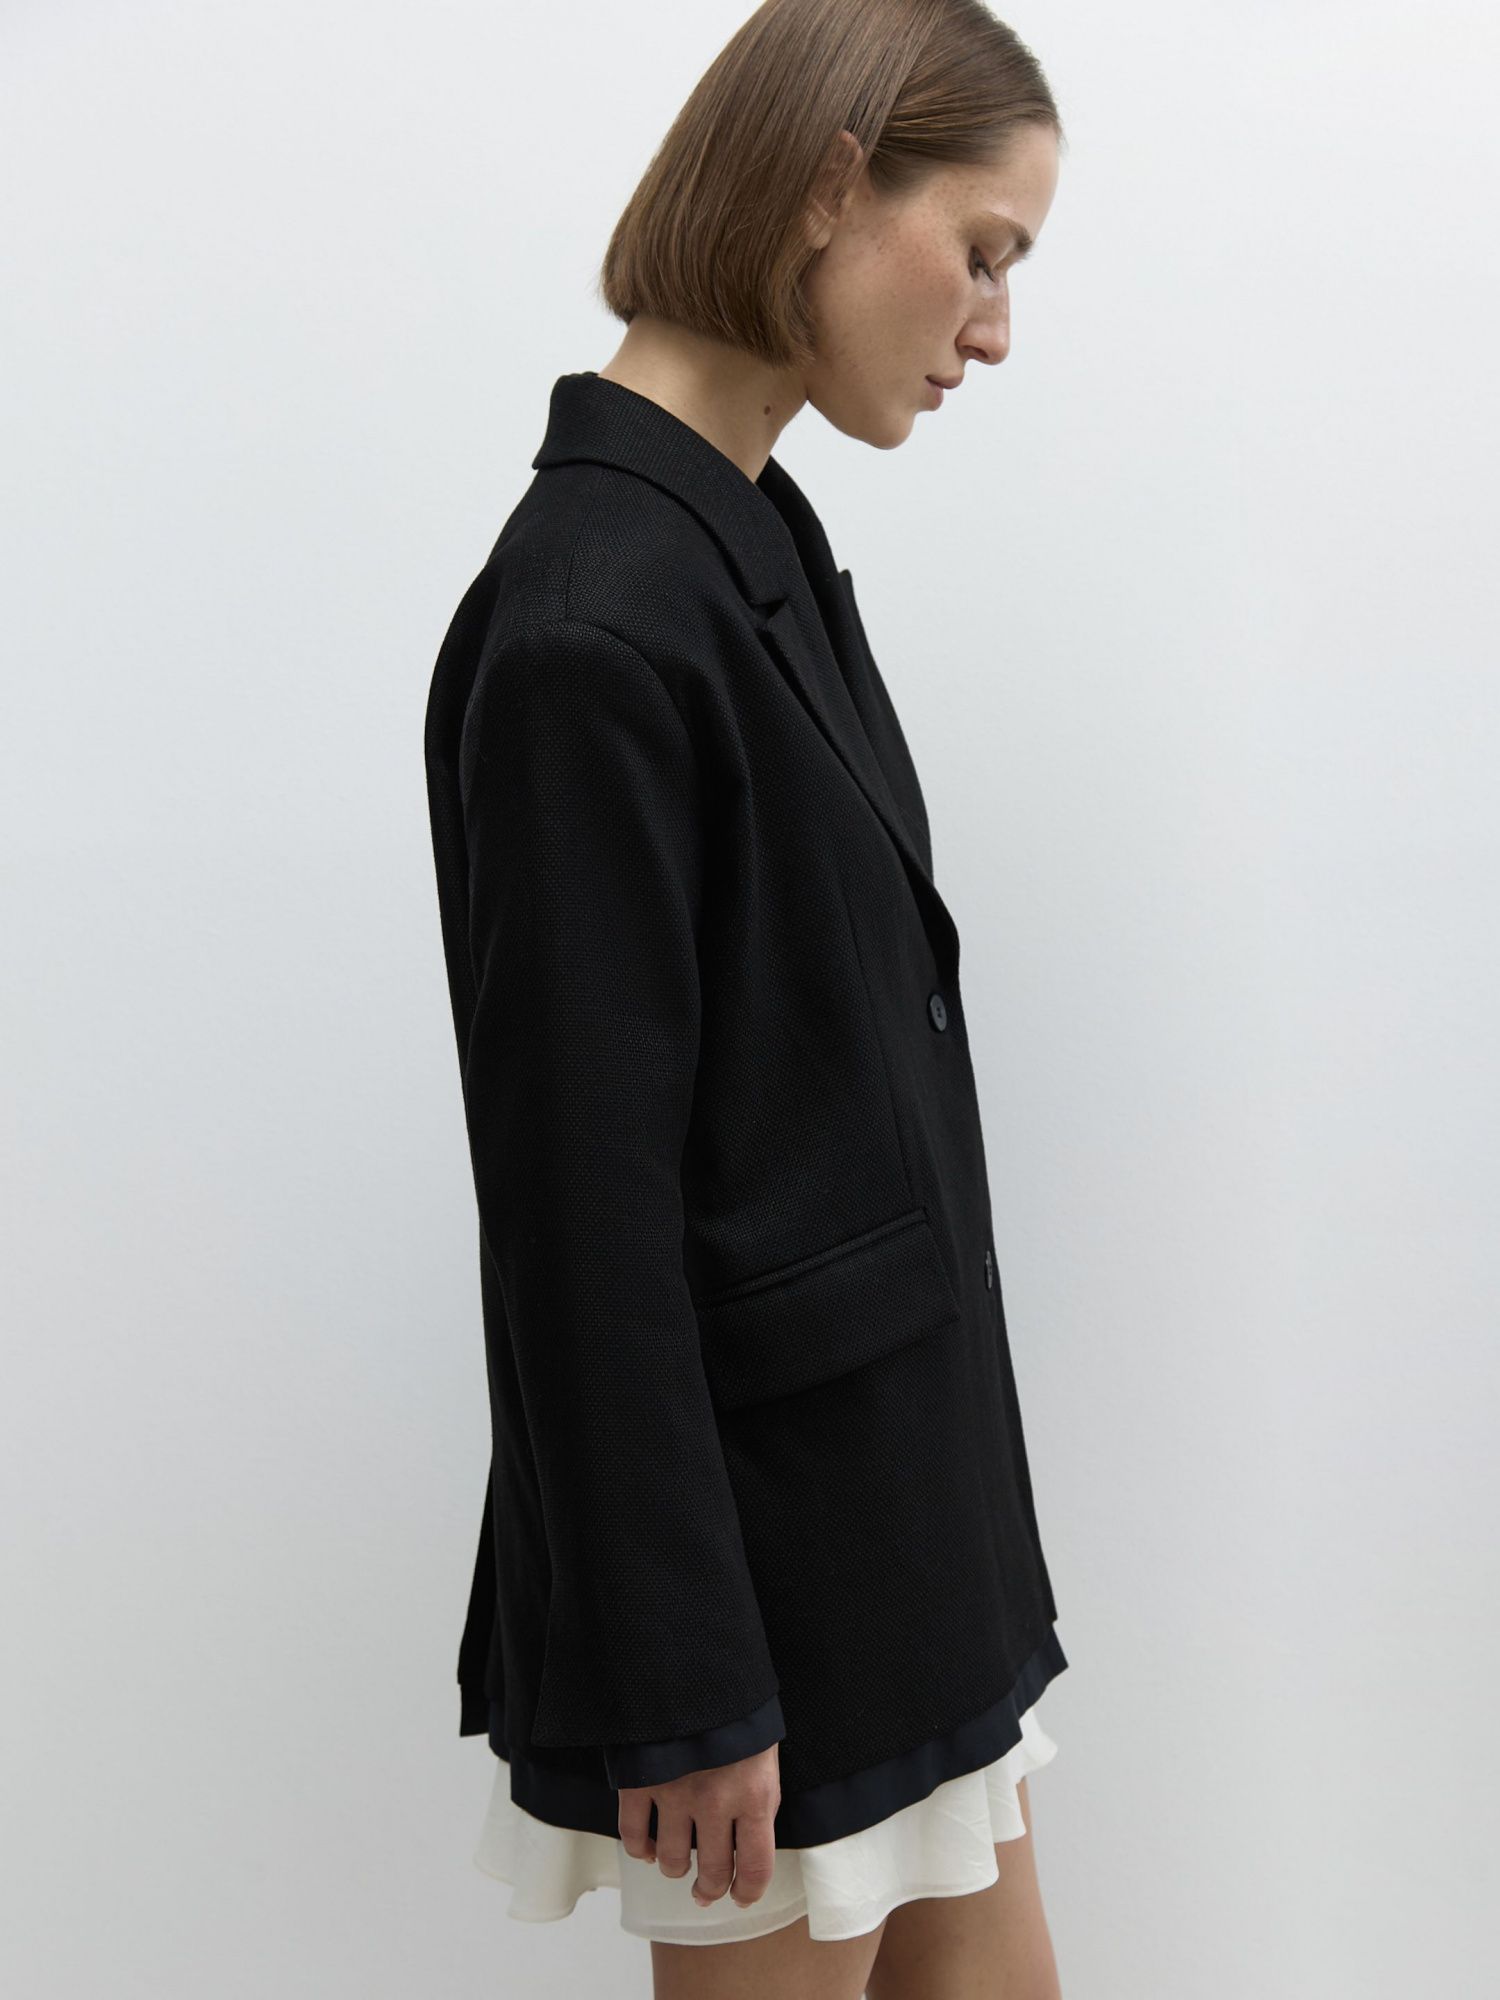 Жакет изо льна с имитацией рубашки черный - фото 7. Around